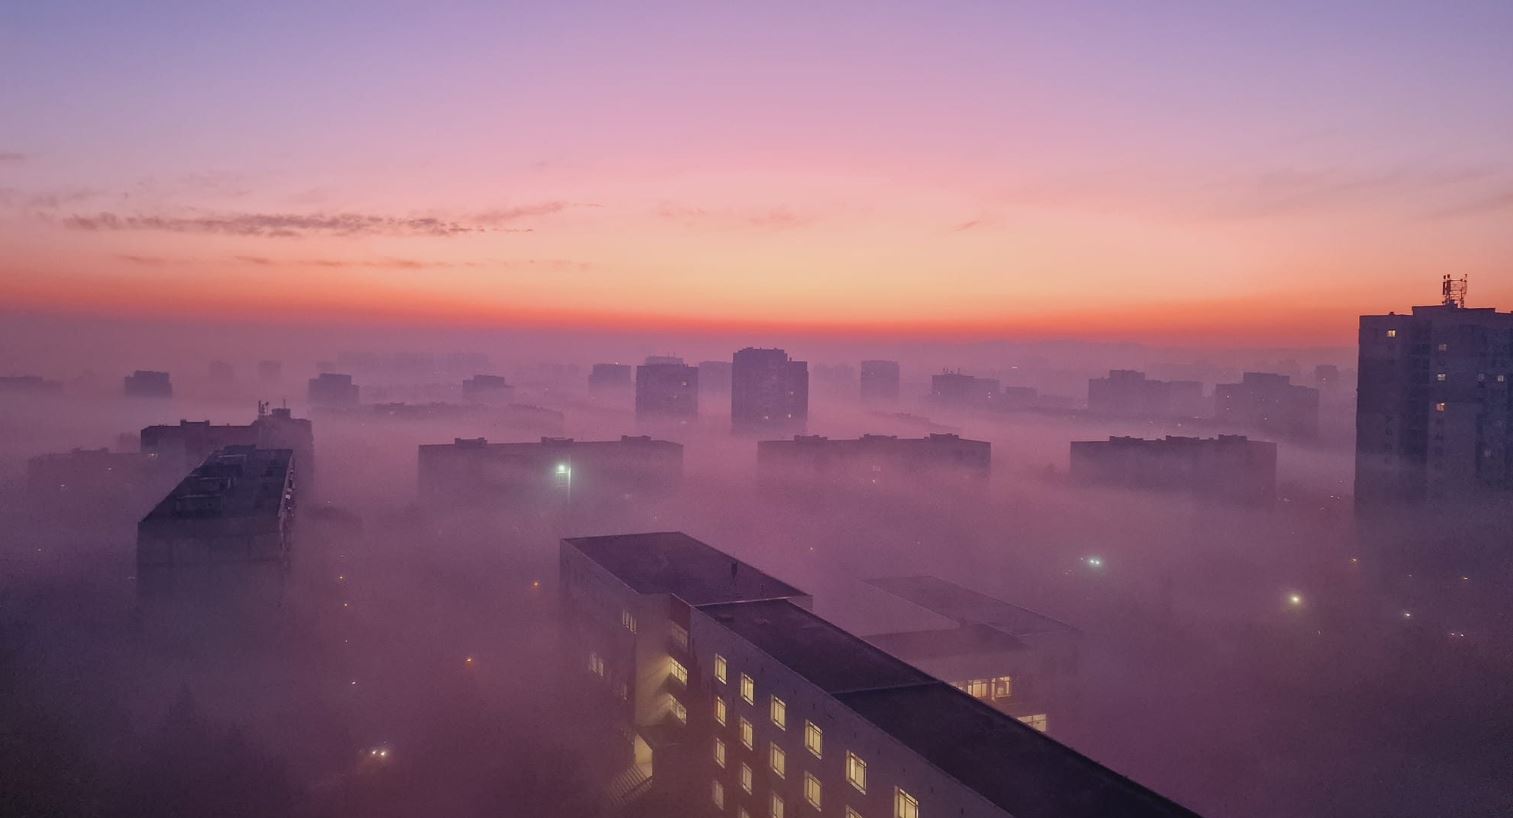 Ομίχλη ακτινοβολίας: Το καιρικό φαινόμενο που κρύβει ολόκληρες πόλεις (photos)